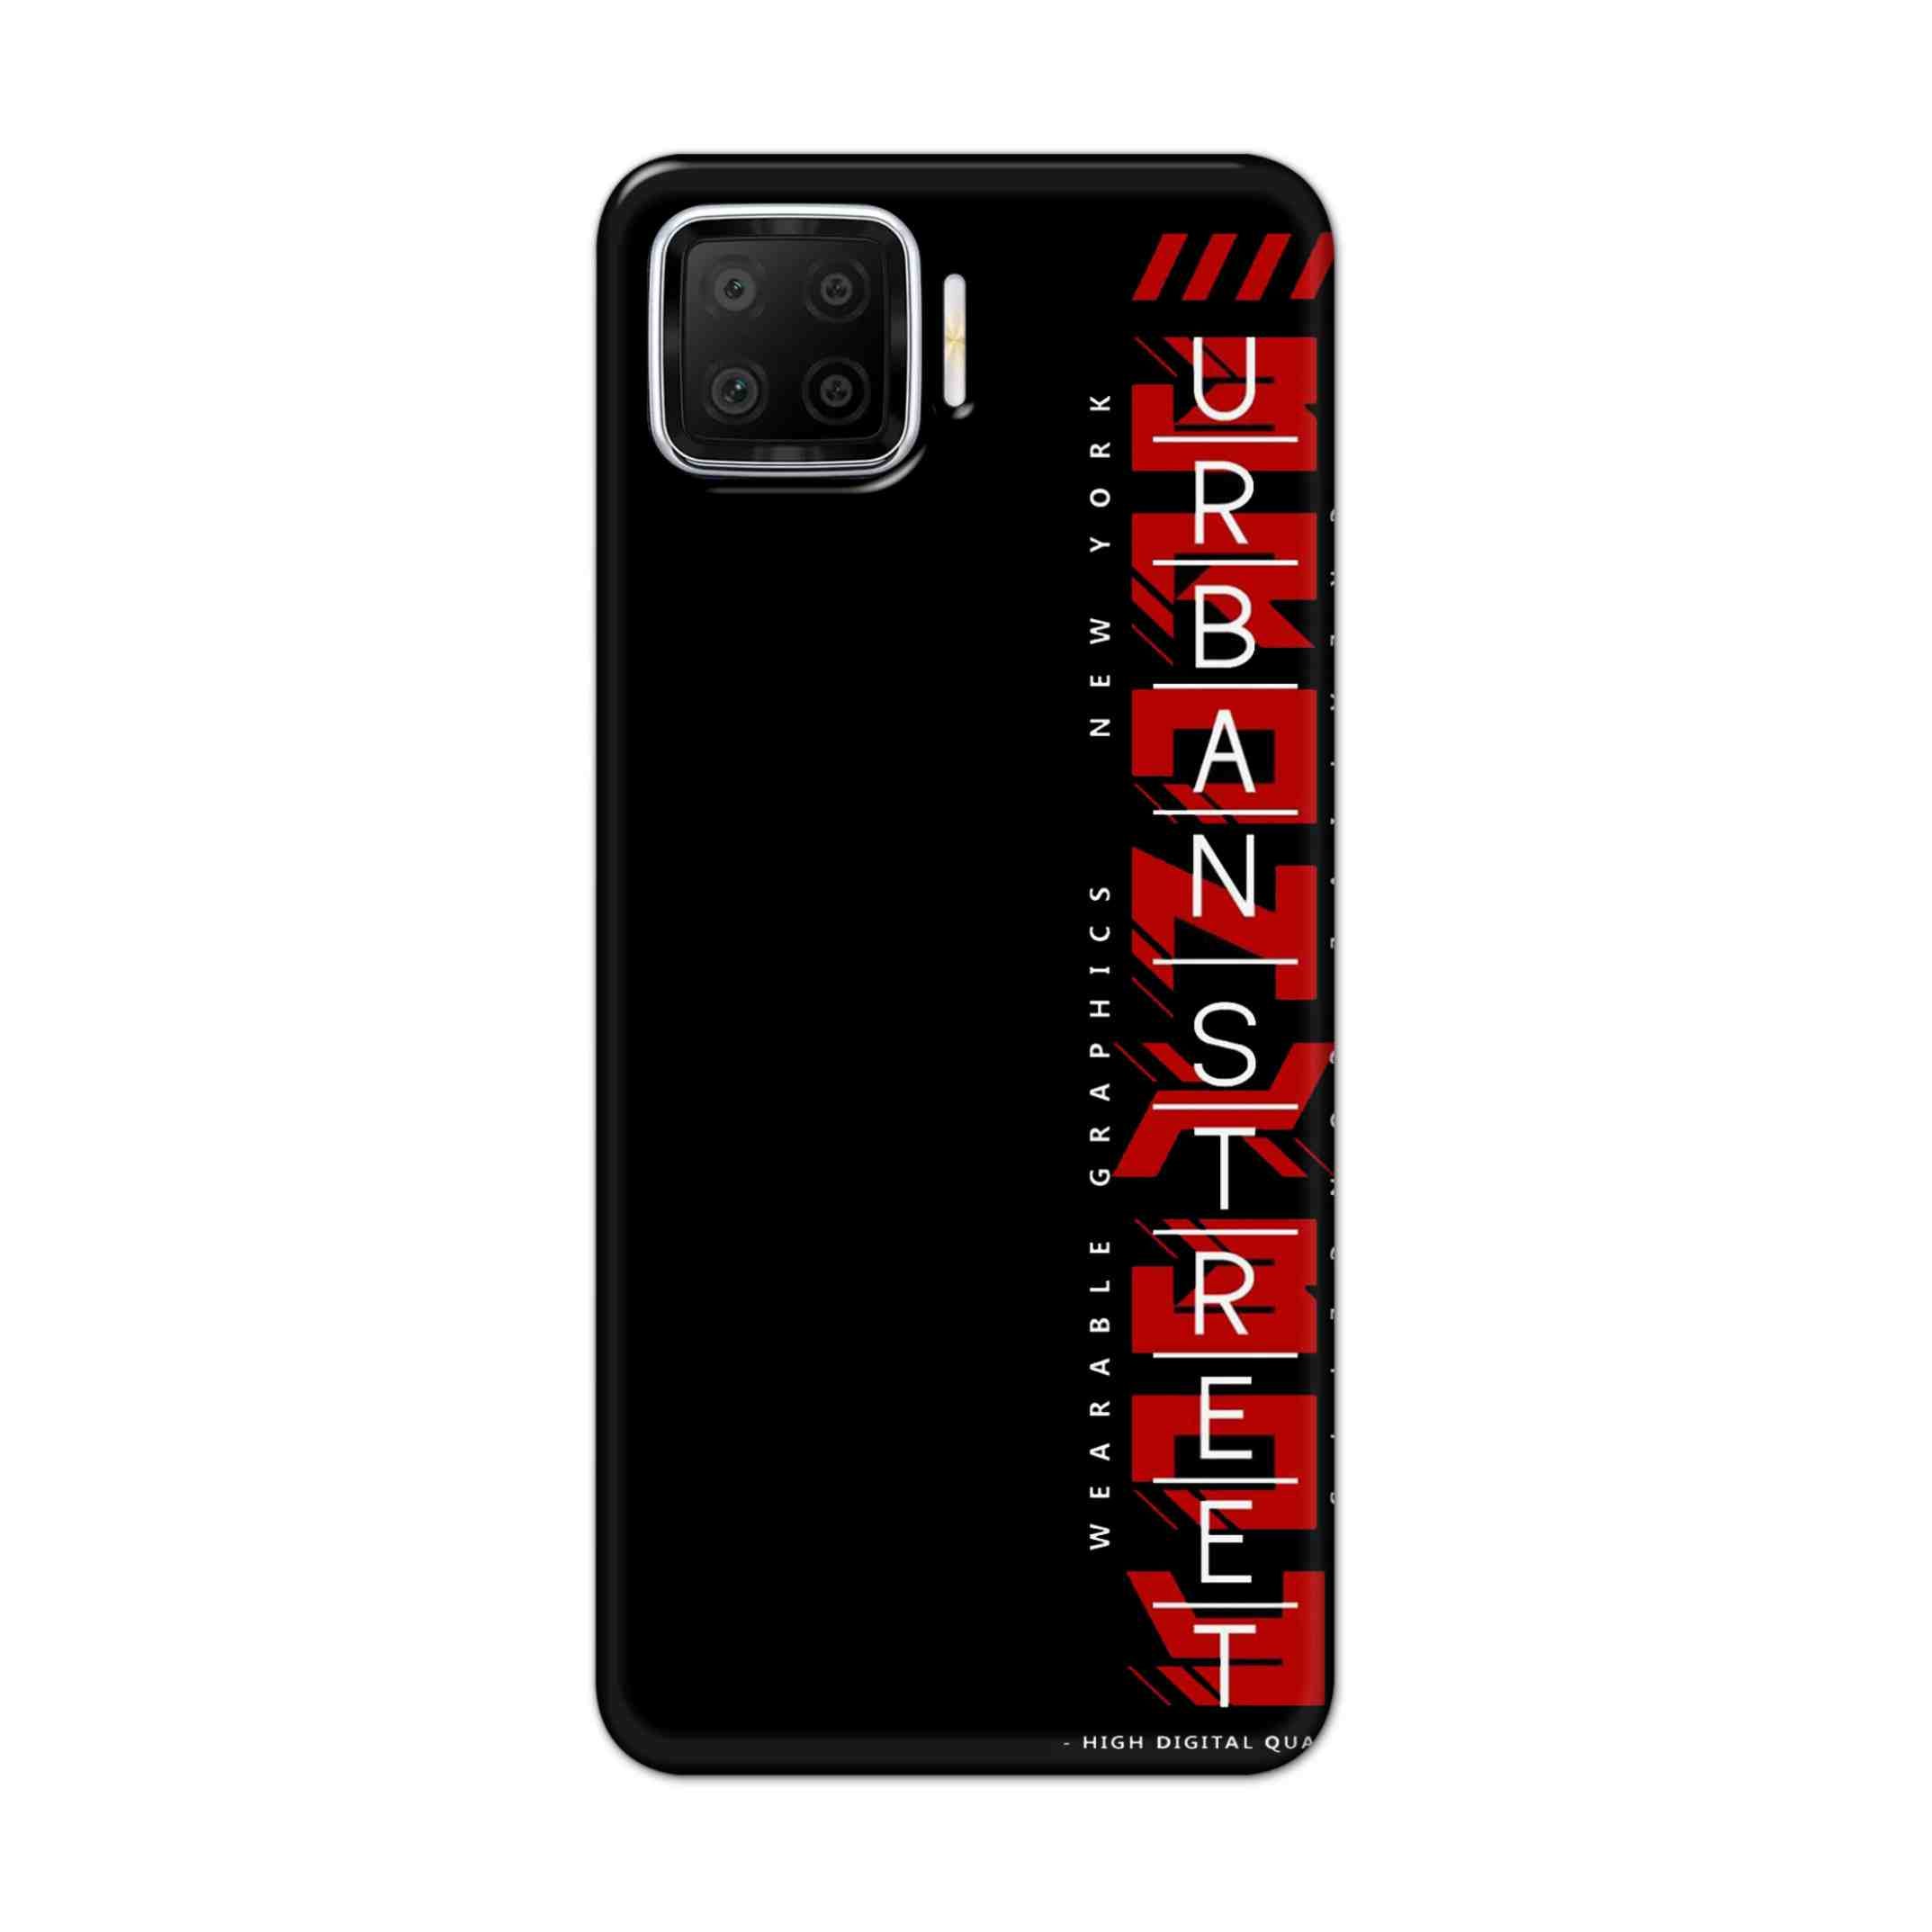 Buy Urban Street Hard Back Mobile Phone Case Cover For Oppo F17 Online